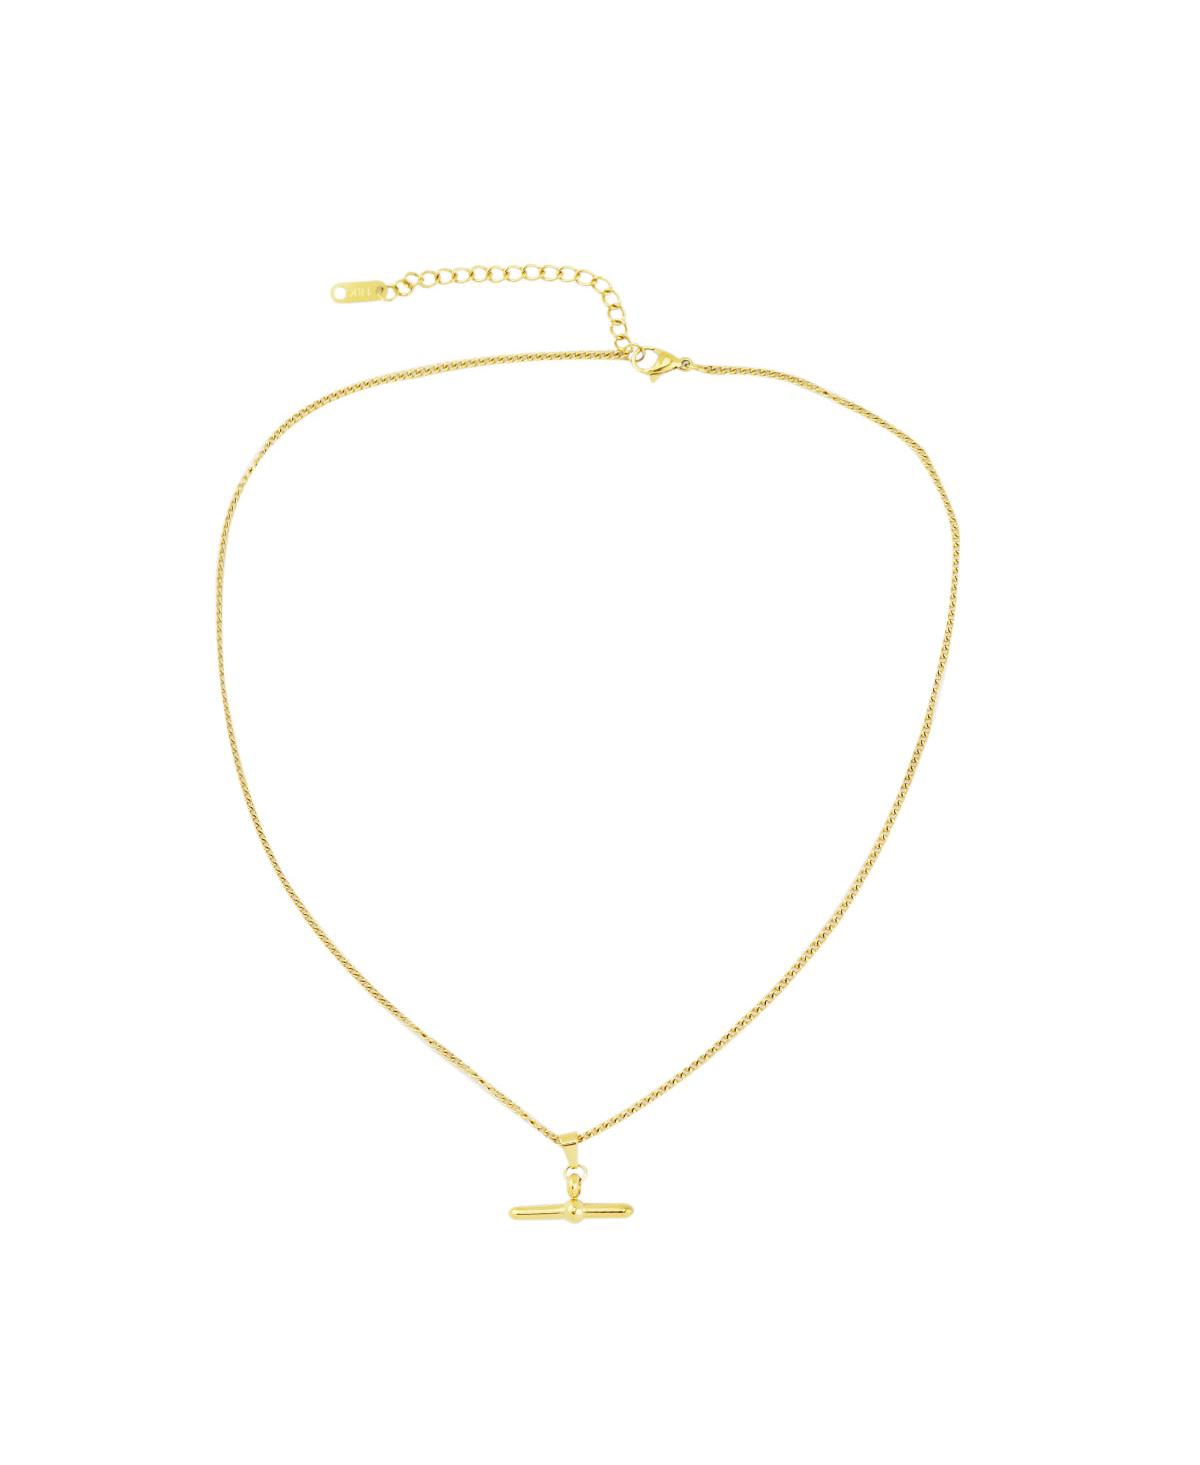 Blythe Toggle Necklace - Gold